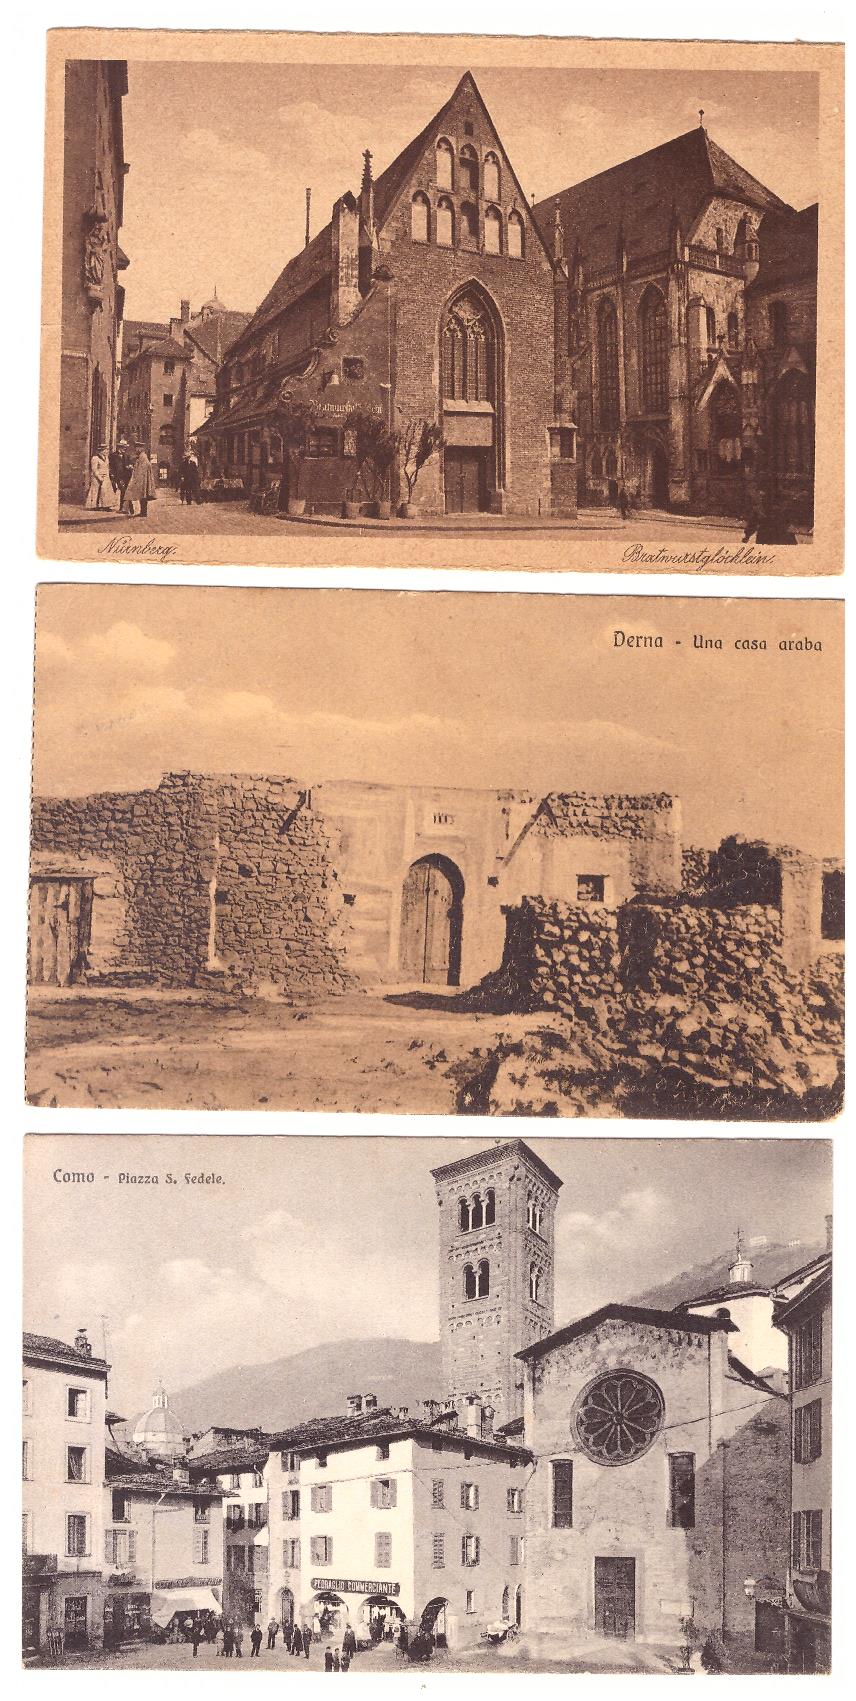 Lote de 3 Postales: Derna. Una casa árabe